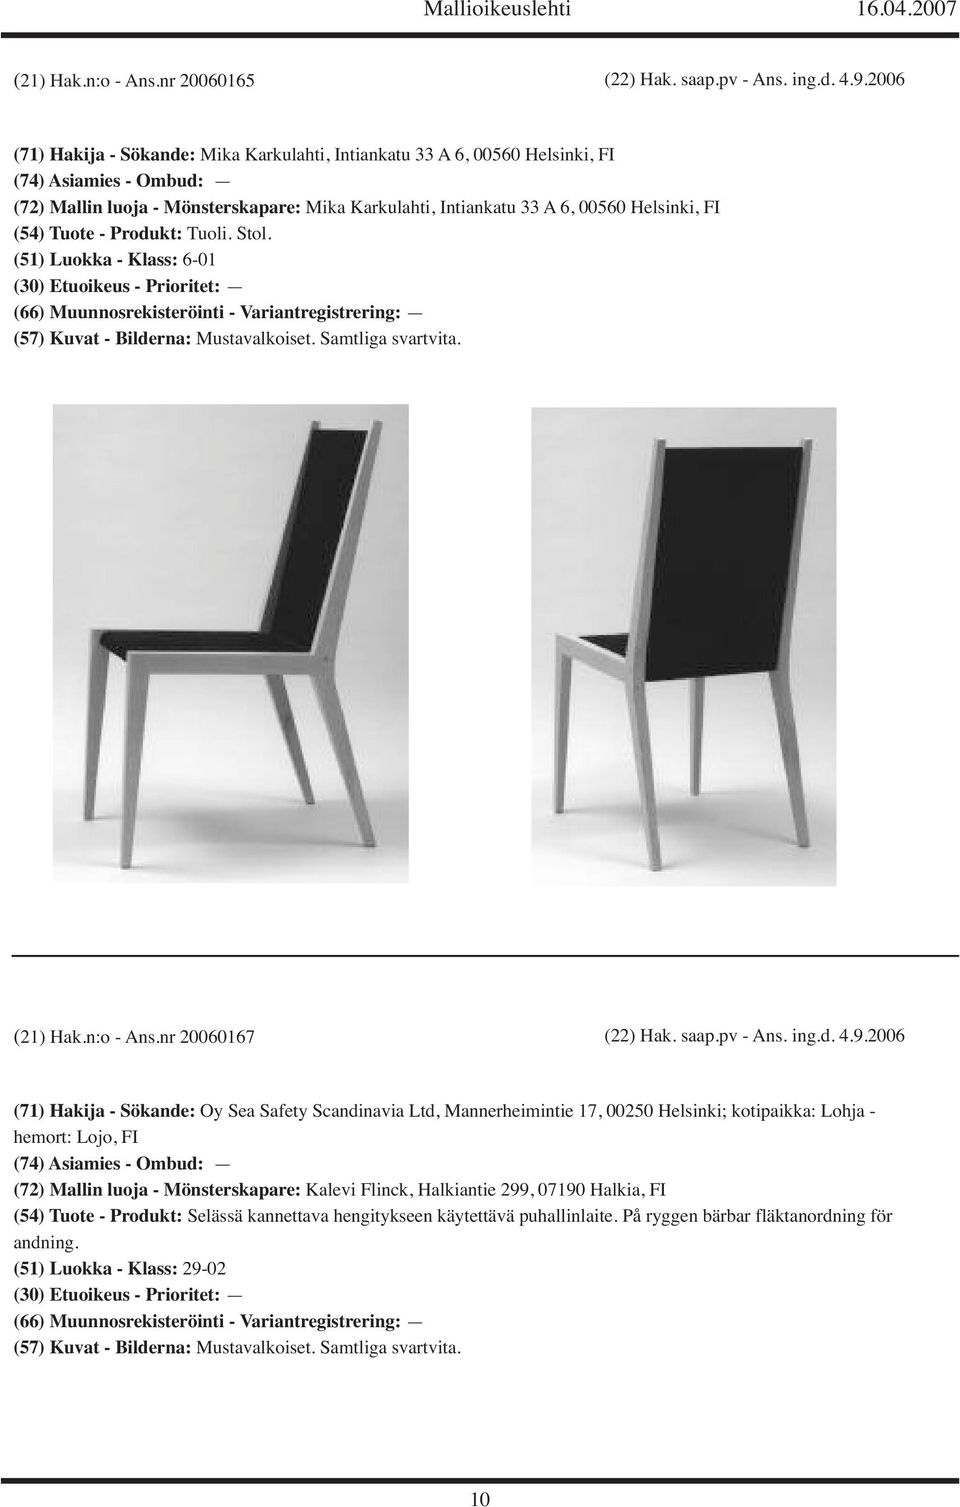 (54) Tuote - Produkt: Tuoli. Stol. (51) Luokka - Klass: 6-01 (21) Hak.n:o - Ans.nr 20060167 (22) Hak. saap.pv - Ans. ing.d. 4.9.